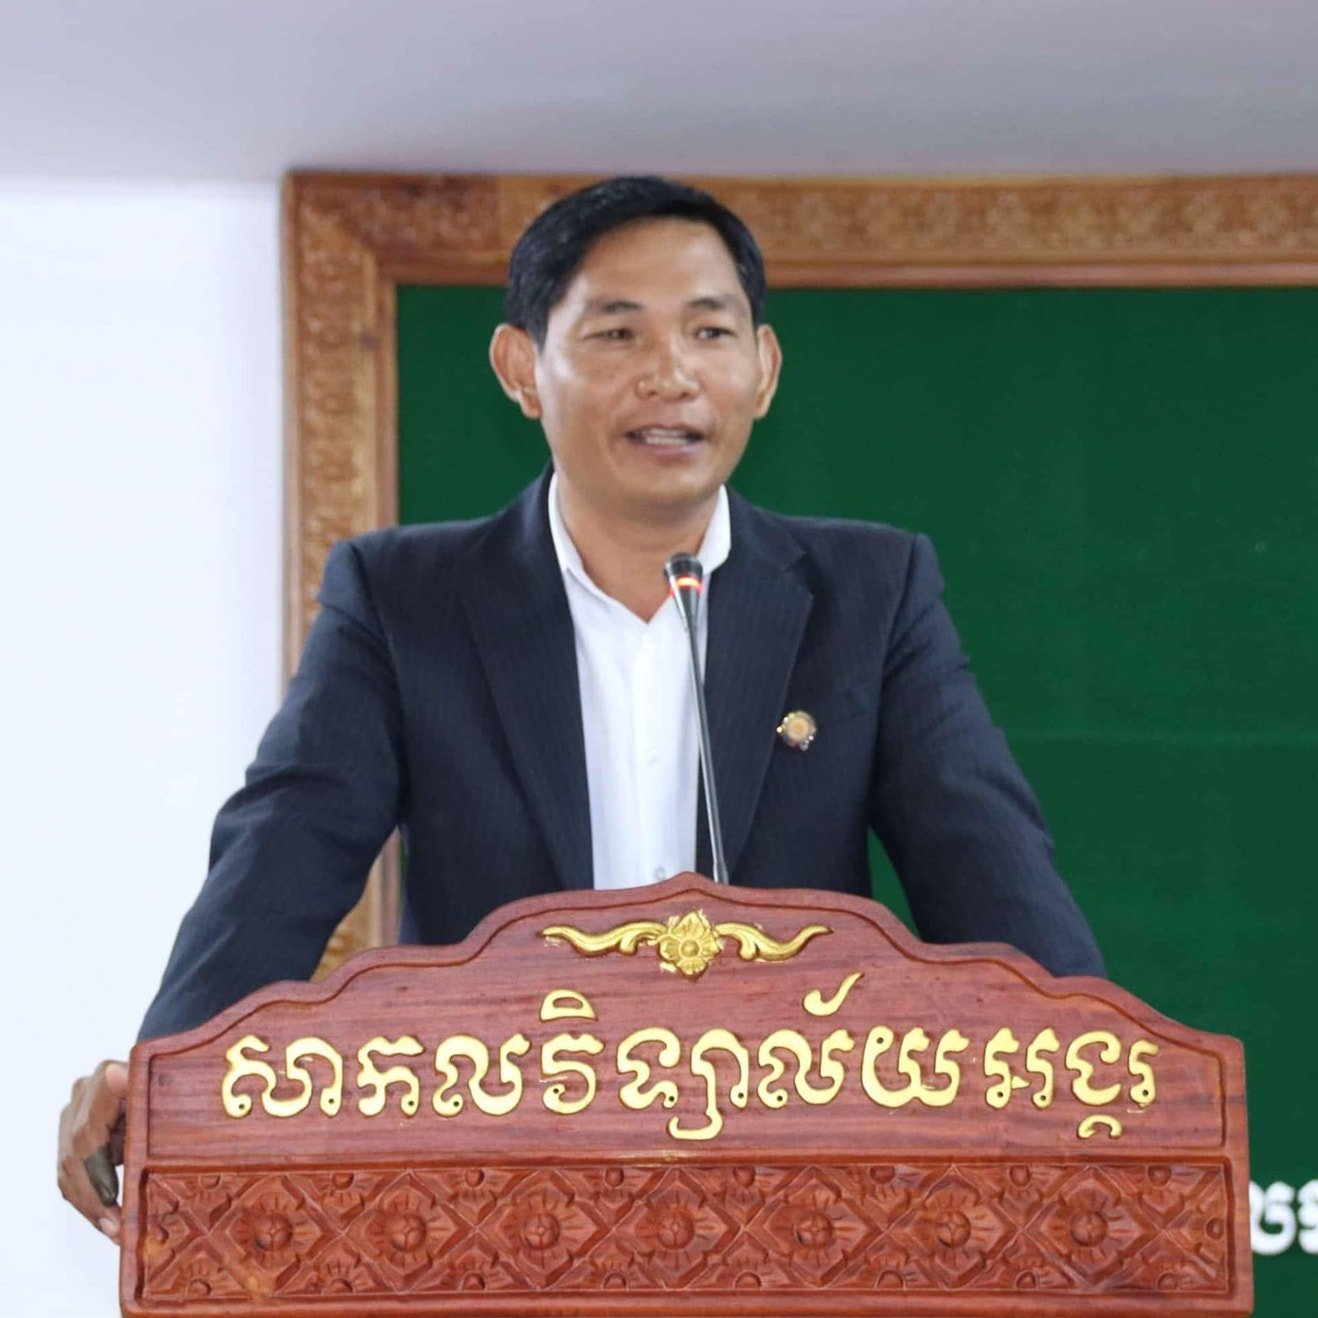 Sok Tonh — Owner &amp; Director of Estates